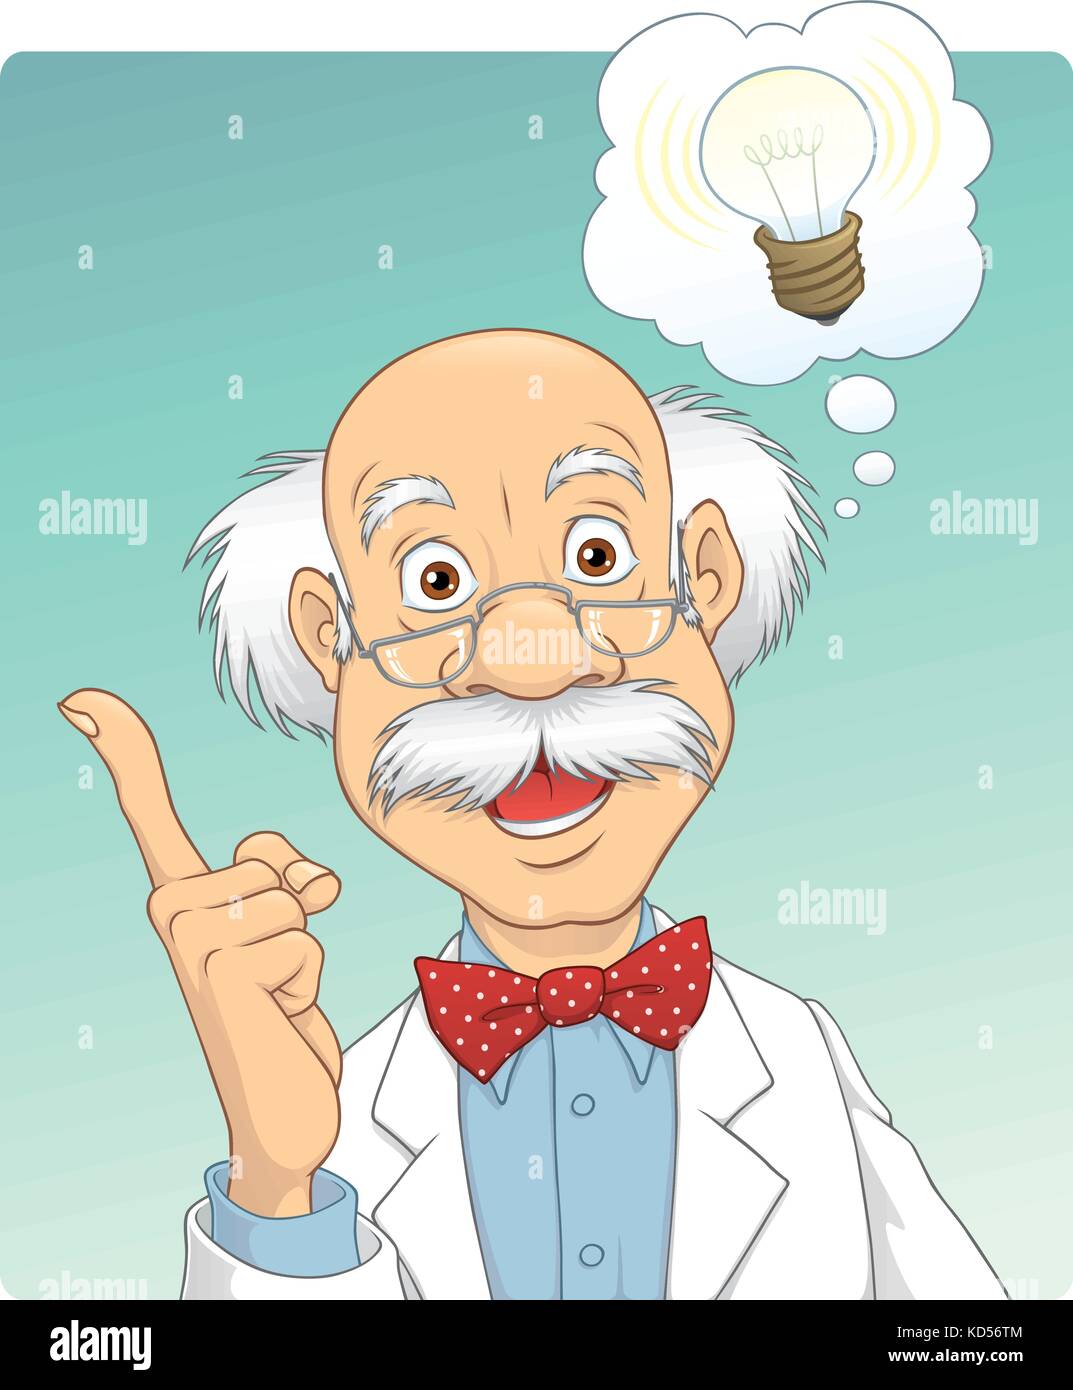 Vector cartoon of a scientist who just got a brilliant idea Stock Vector